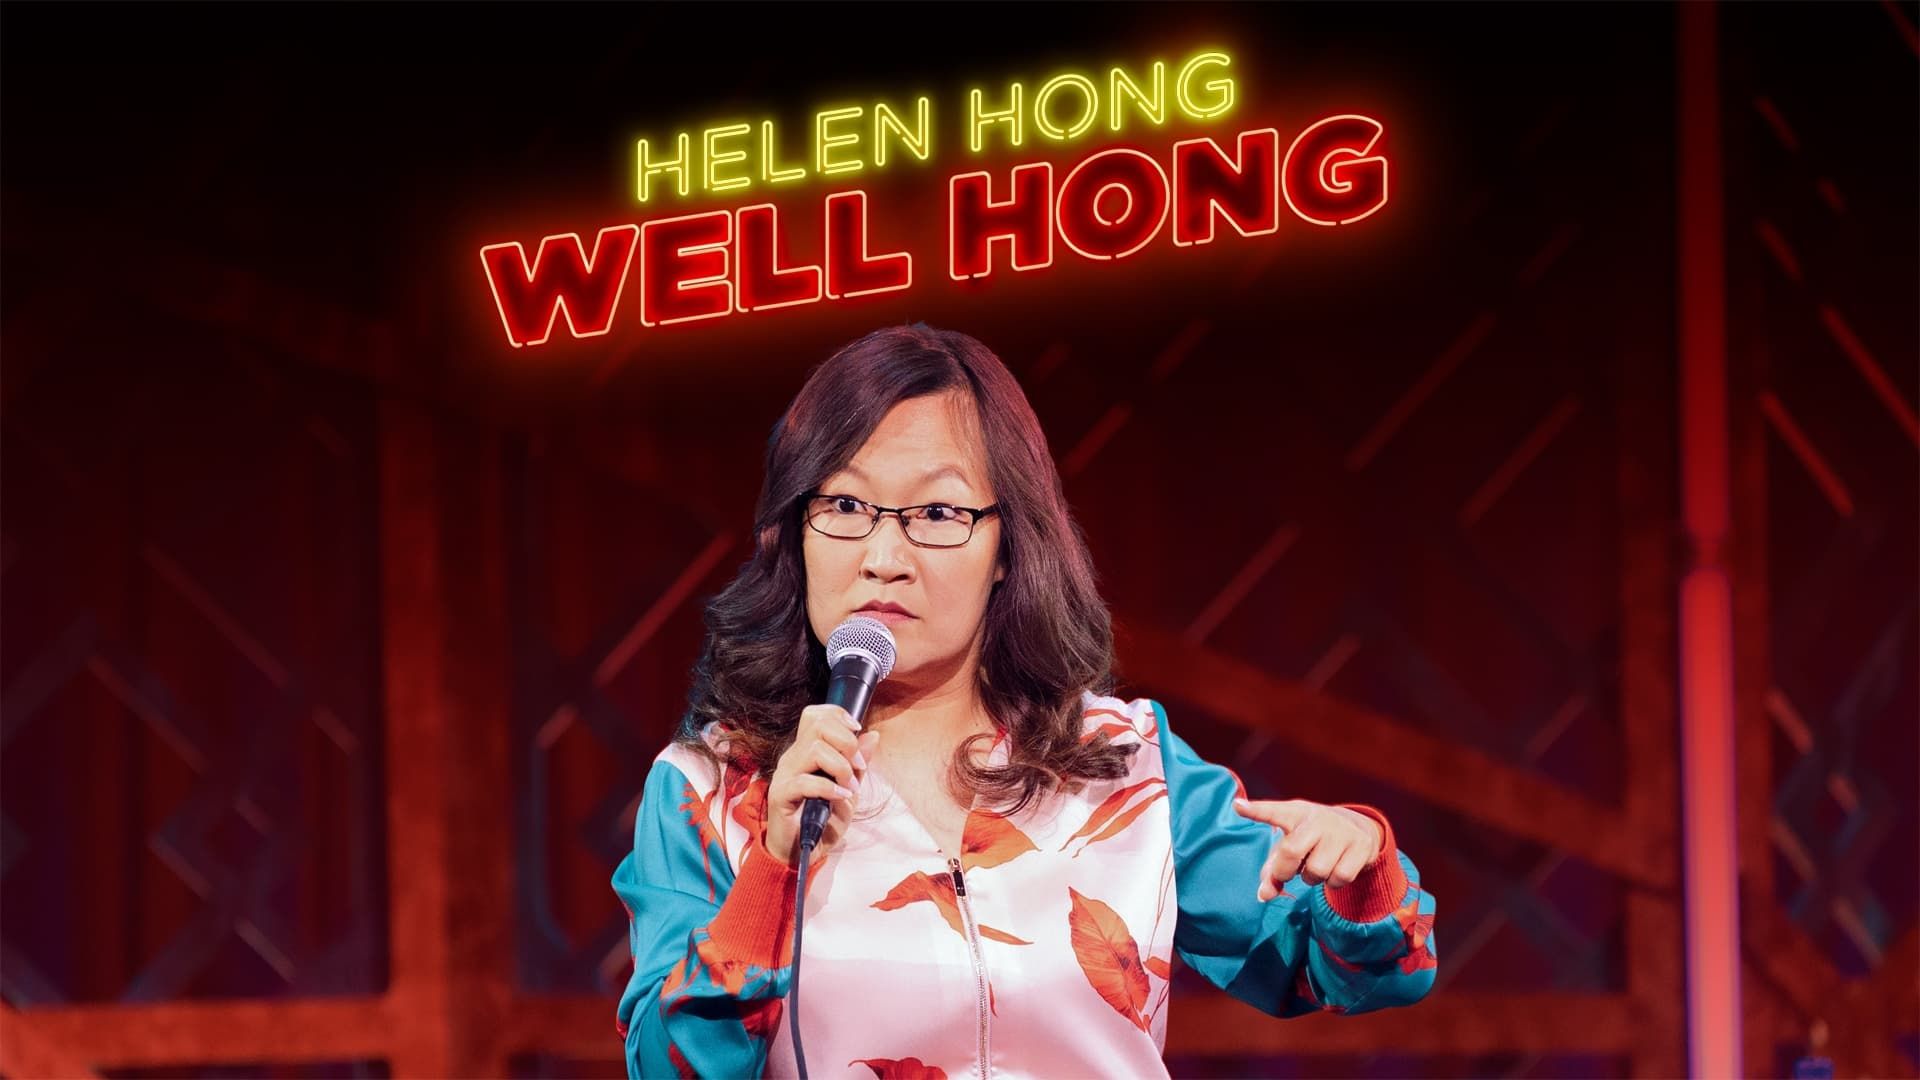 Helen Hong: Well Hong (2022) background